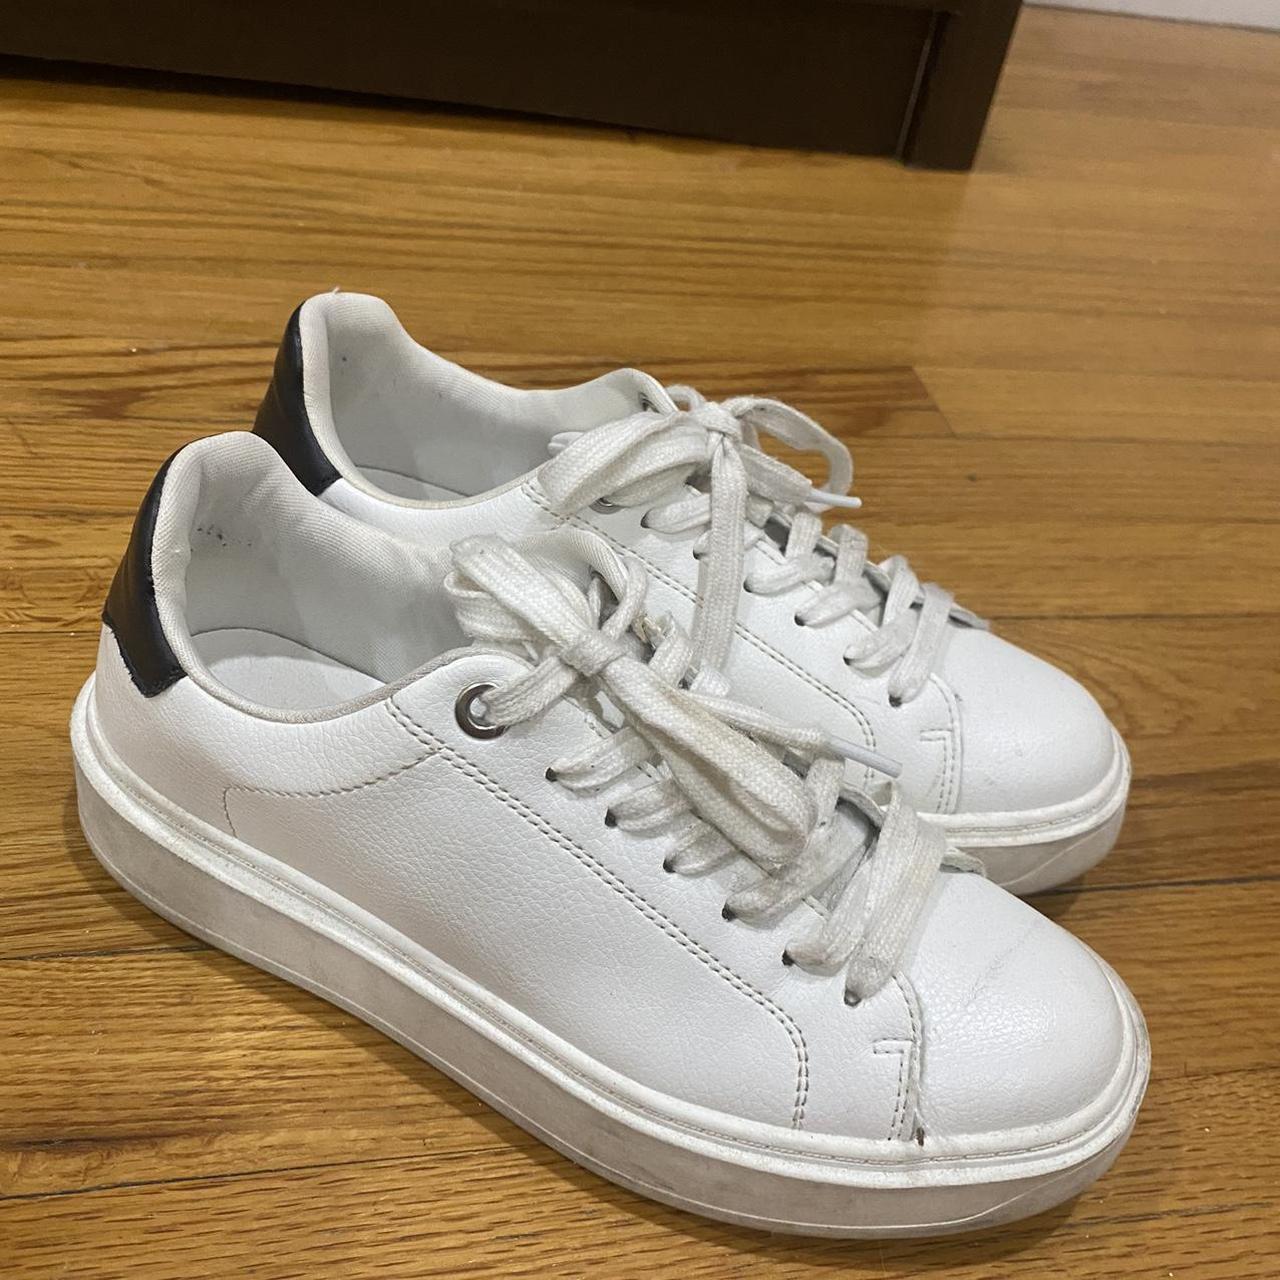 White Steve Madden shoes - Depop